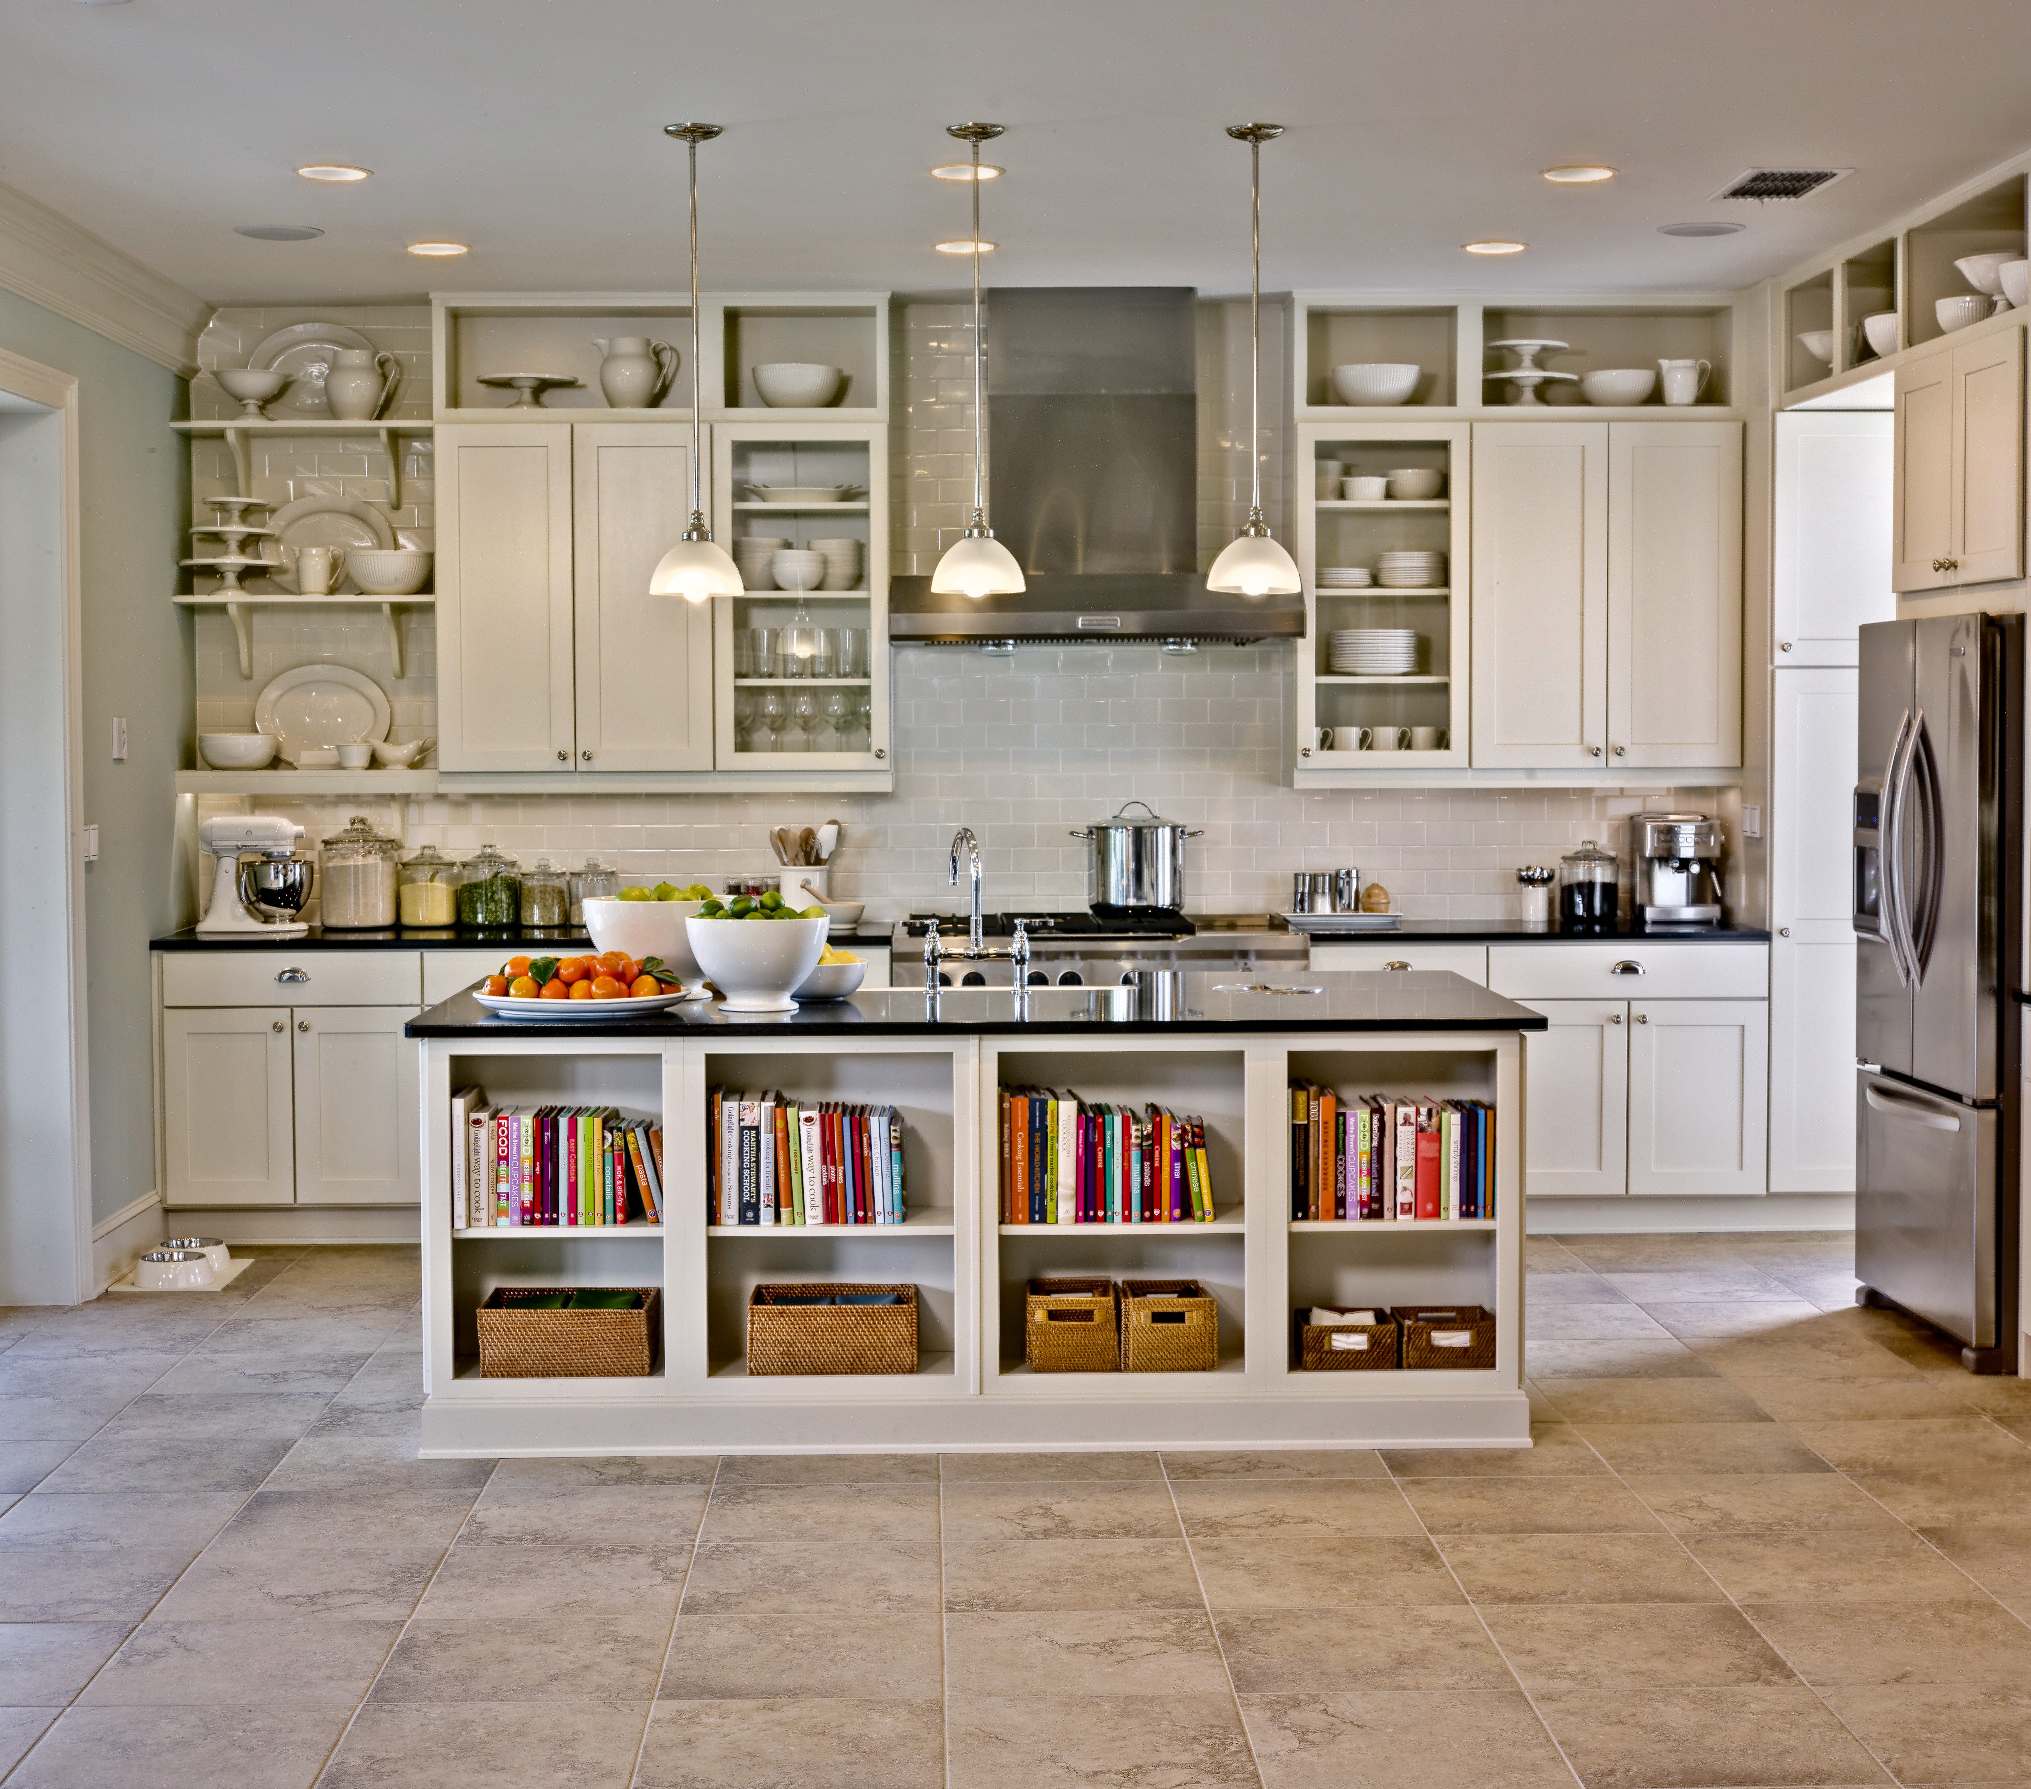 Sắp xếp phòng bếp gọn gàng giúp bạn tiết kiệm thời gian và năng lượng trong quá trình nấu ăn. Đón xem hình ảnh về sắp xếp phòng bếp để biến không gian bếp nhà bạn trở nên tiện nghi và thông thoáng.